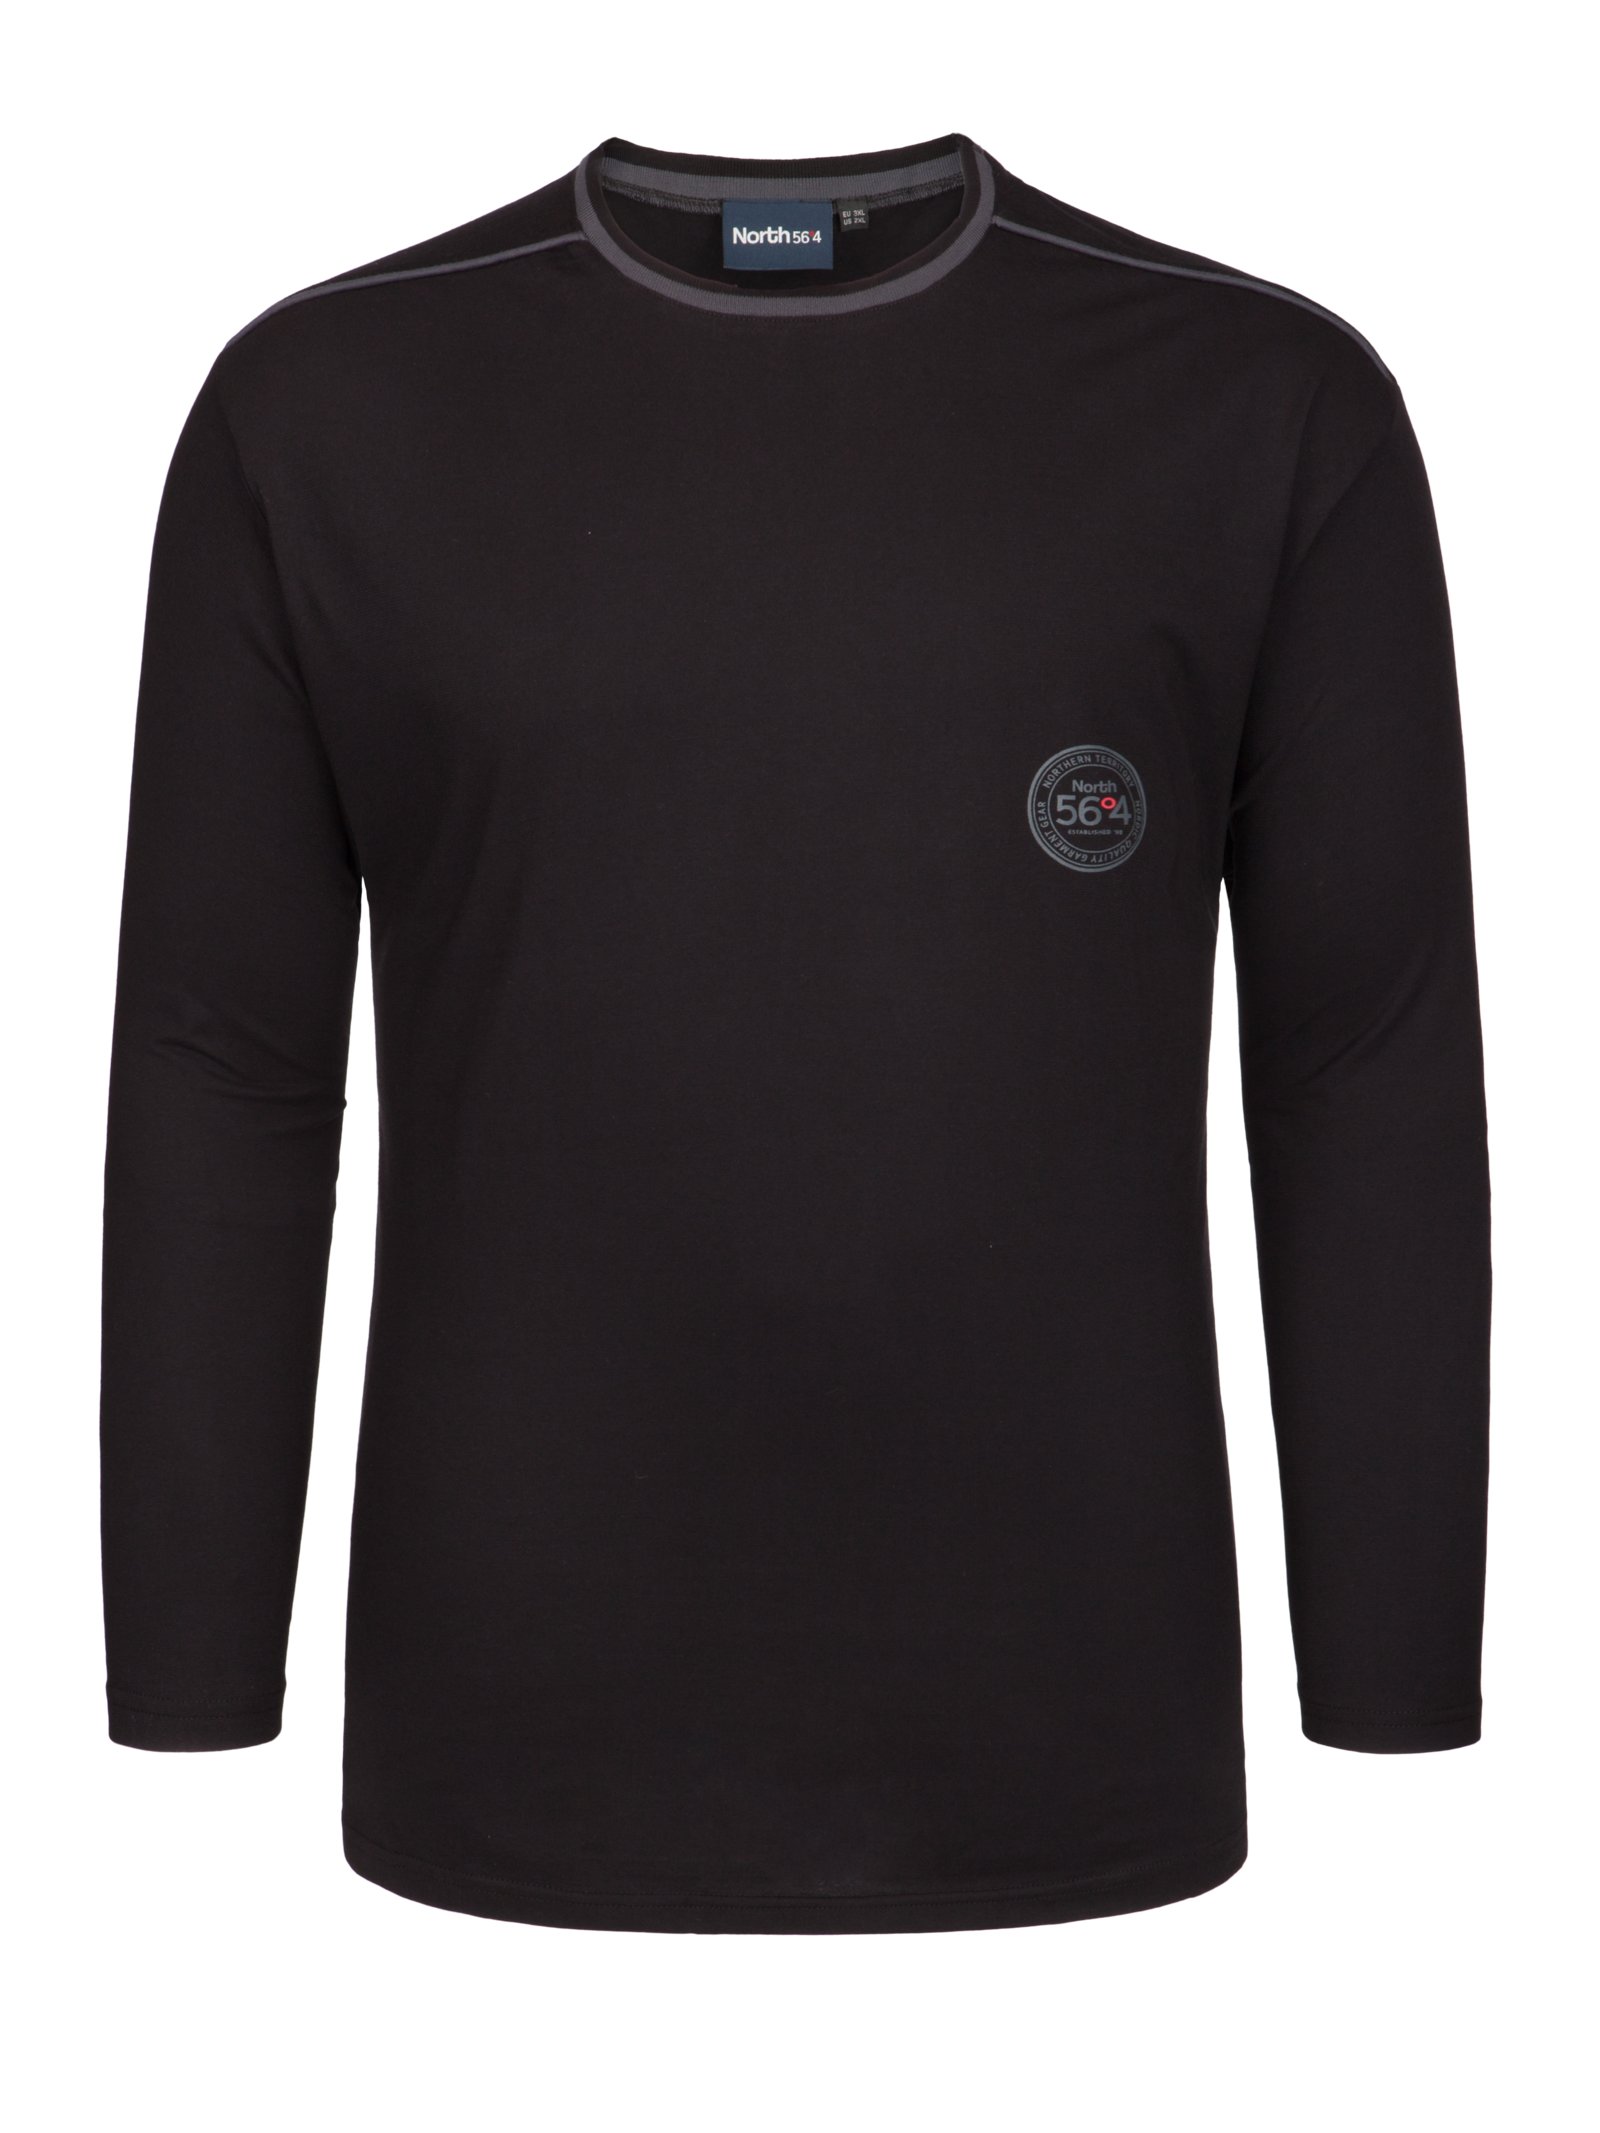 Übergröße : North 56°4, Homewear-Langarm-Shirt aus Baumwolle in Schwarz